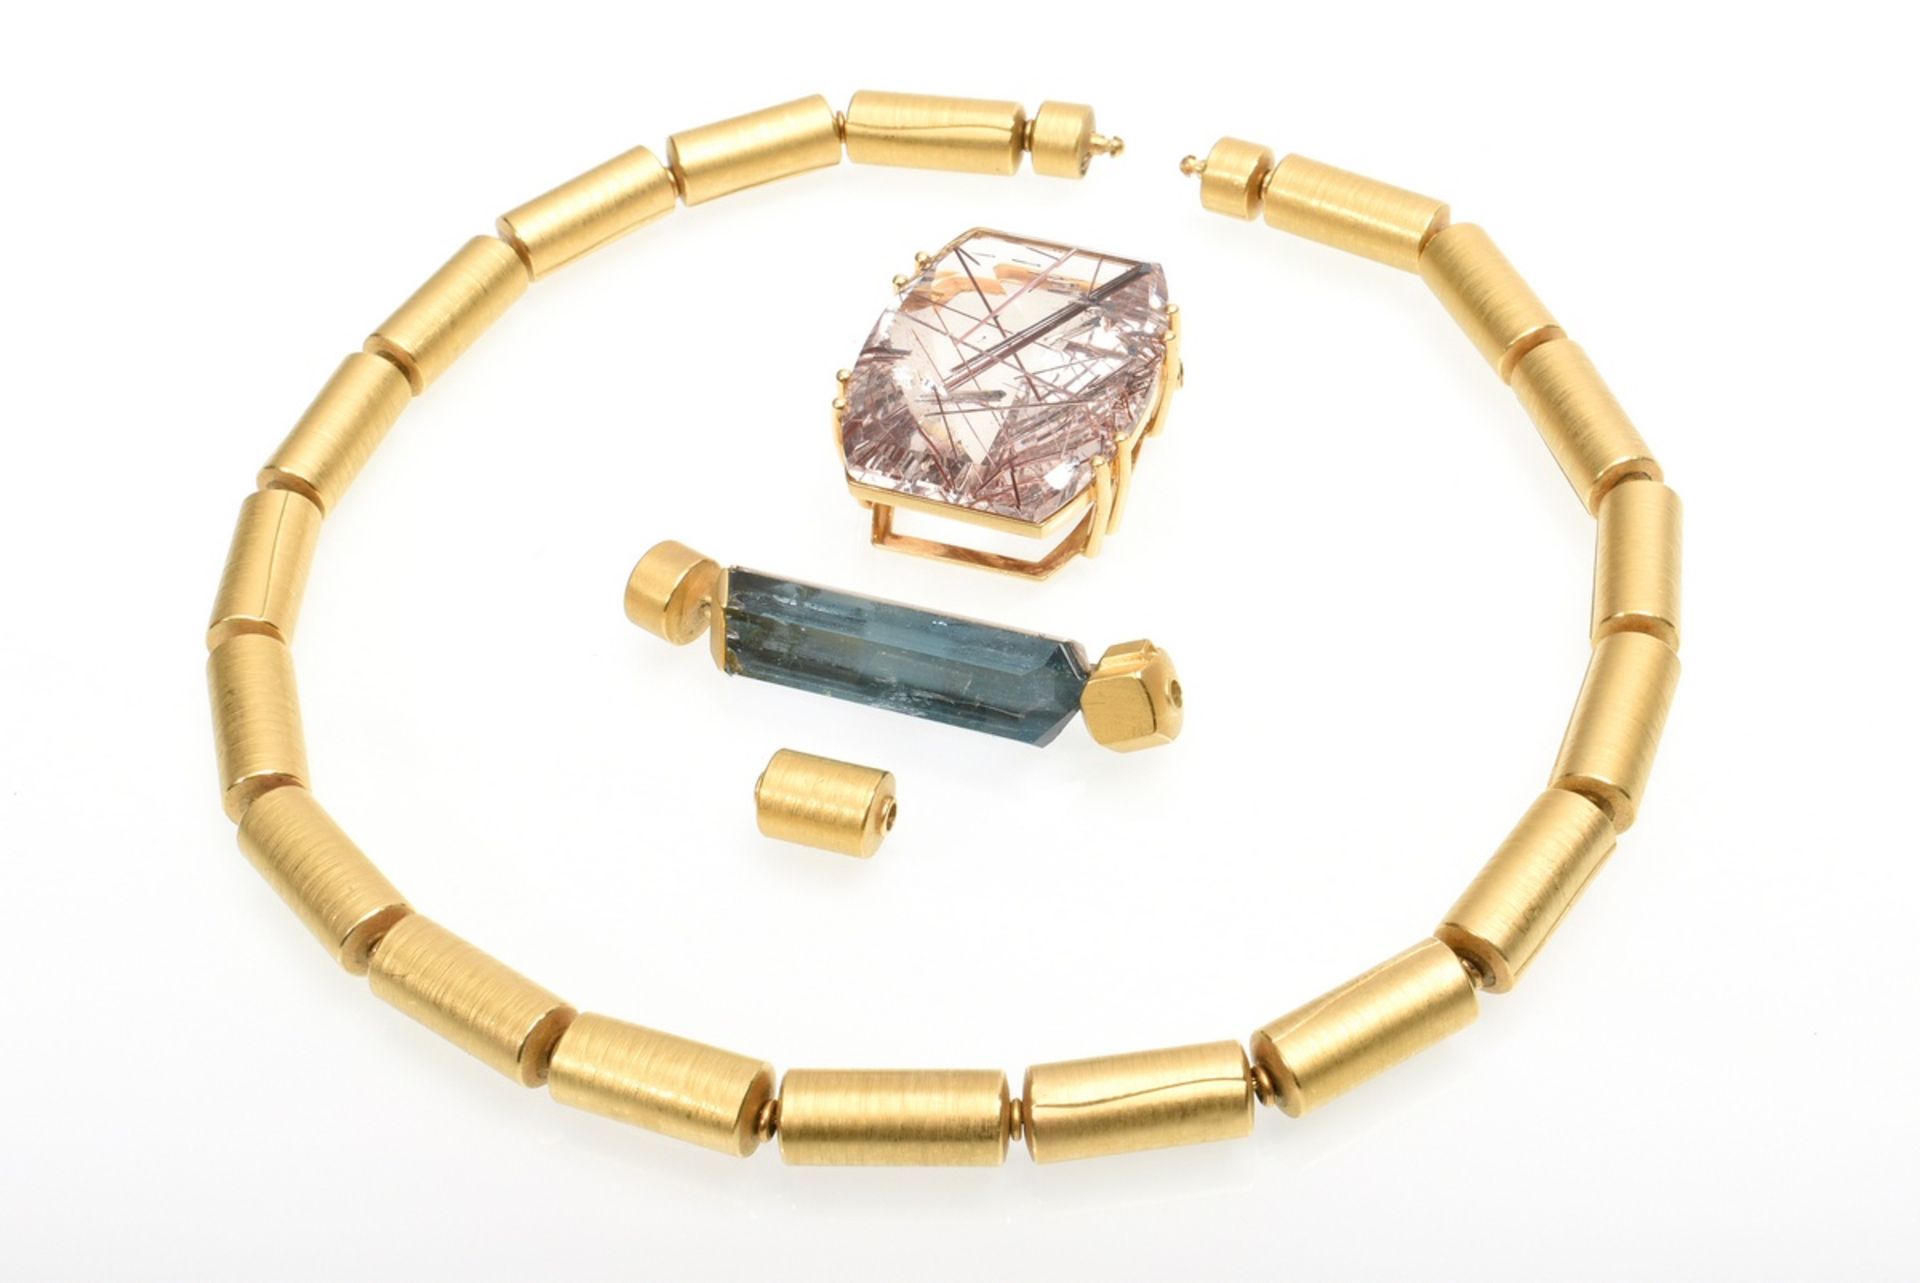 4 pieces avant-garde GG 900 tube necklace (68,8g, l. 44cm) with 3 different clasps: rutile quartz p